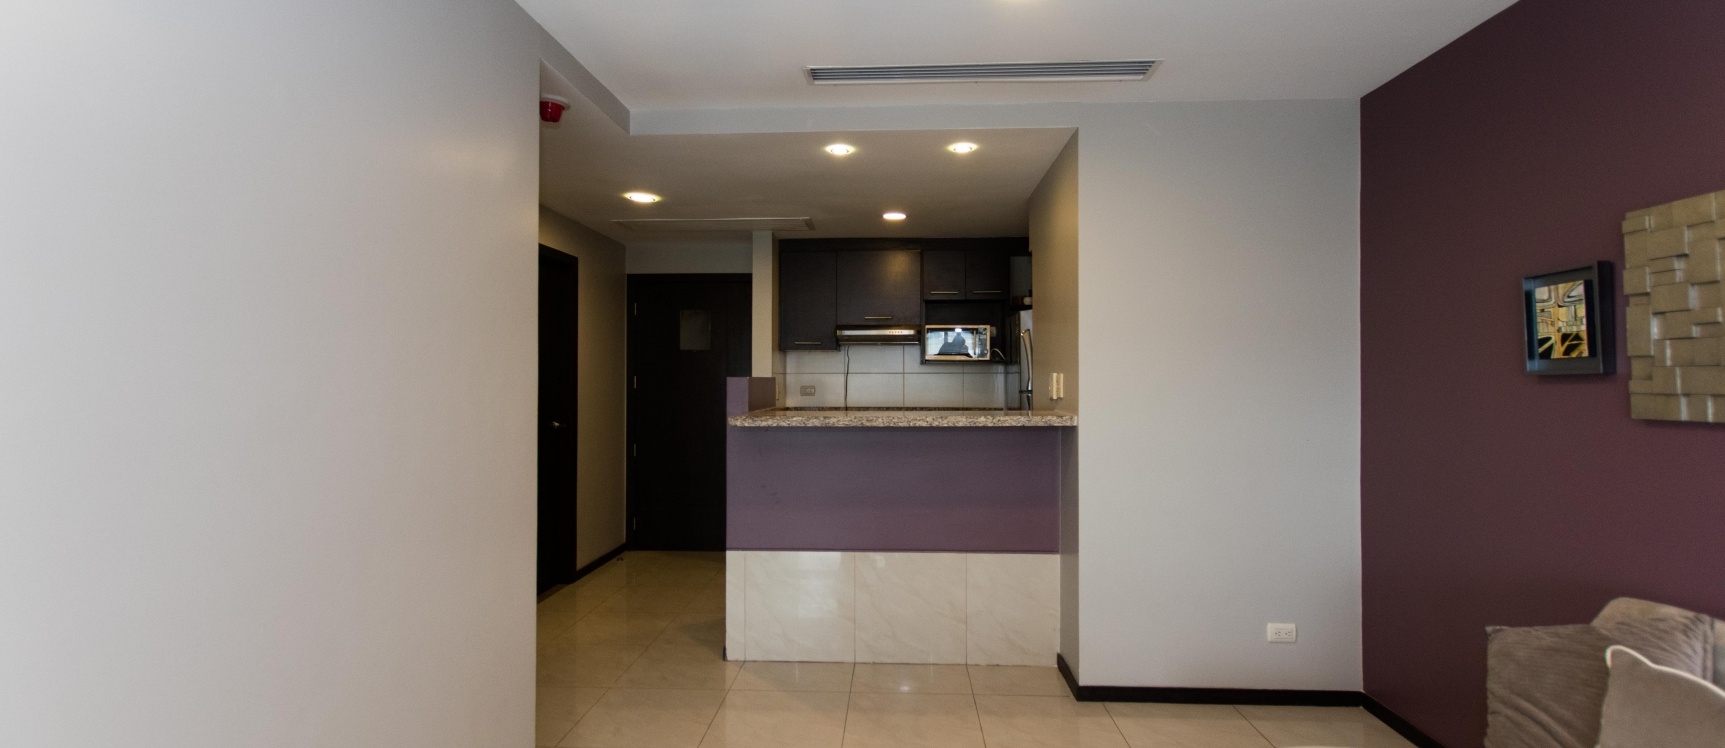 GeoBienes - Suite amoblada en venta ubicada en el Edificio Elite Building  - Plusvalia Guayaquil Casas de venta y alquiler Inmobiliaria Ecuador